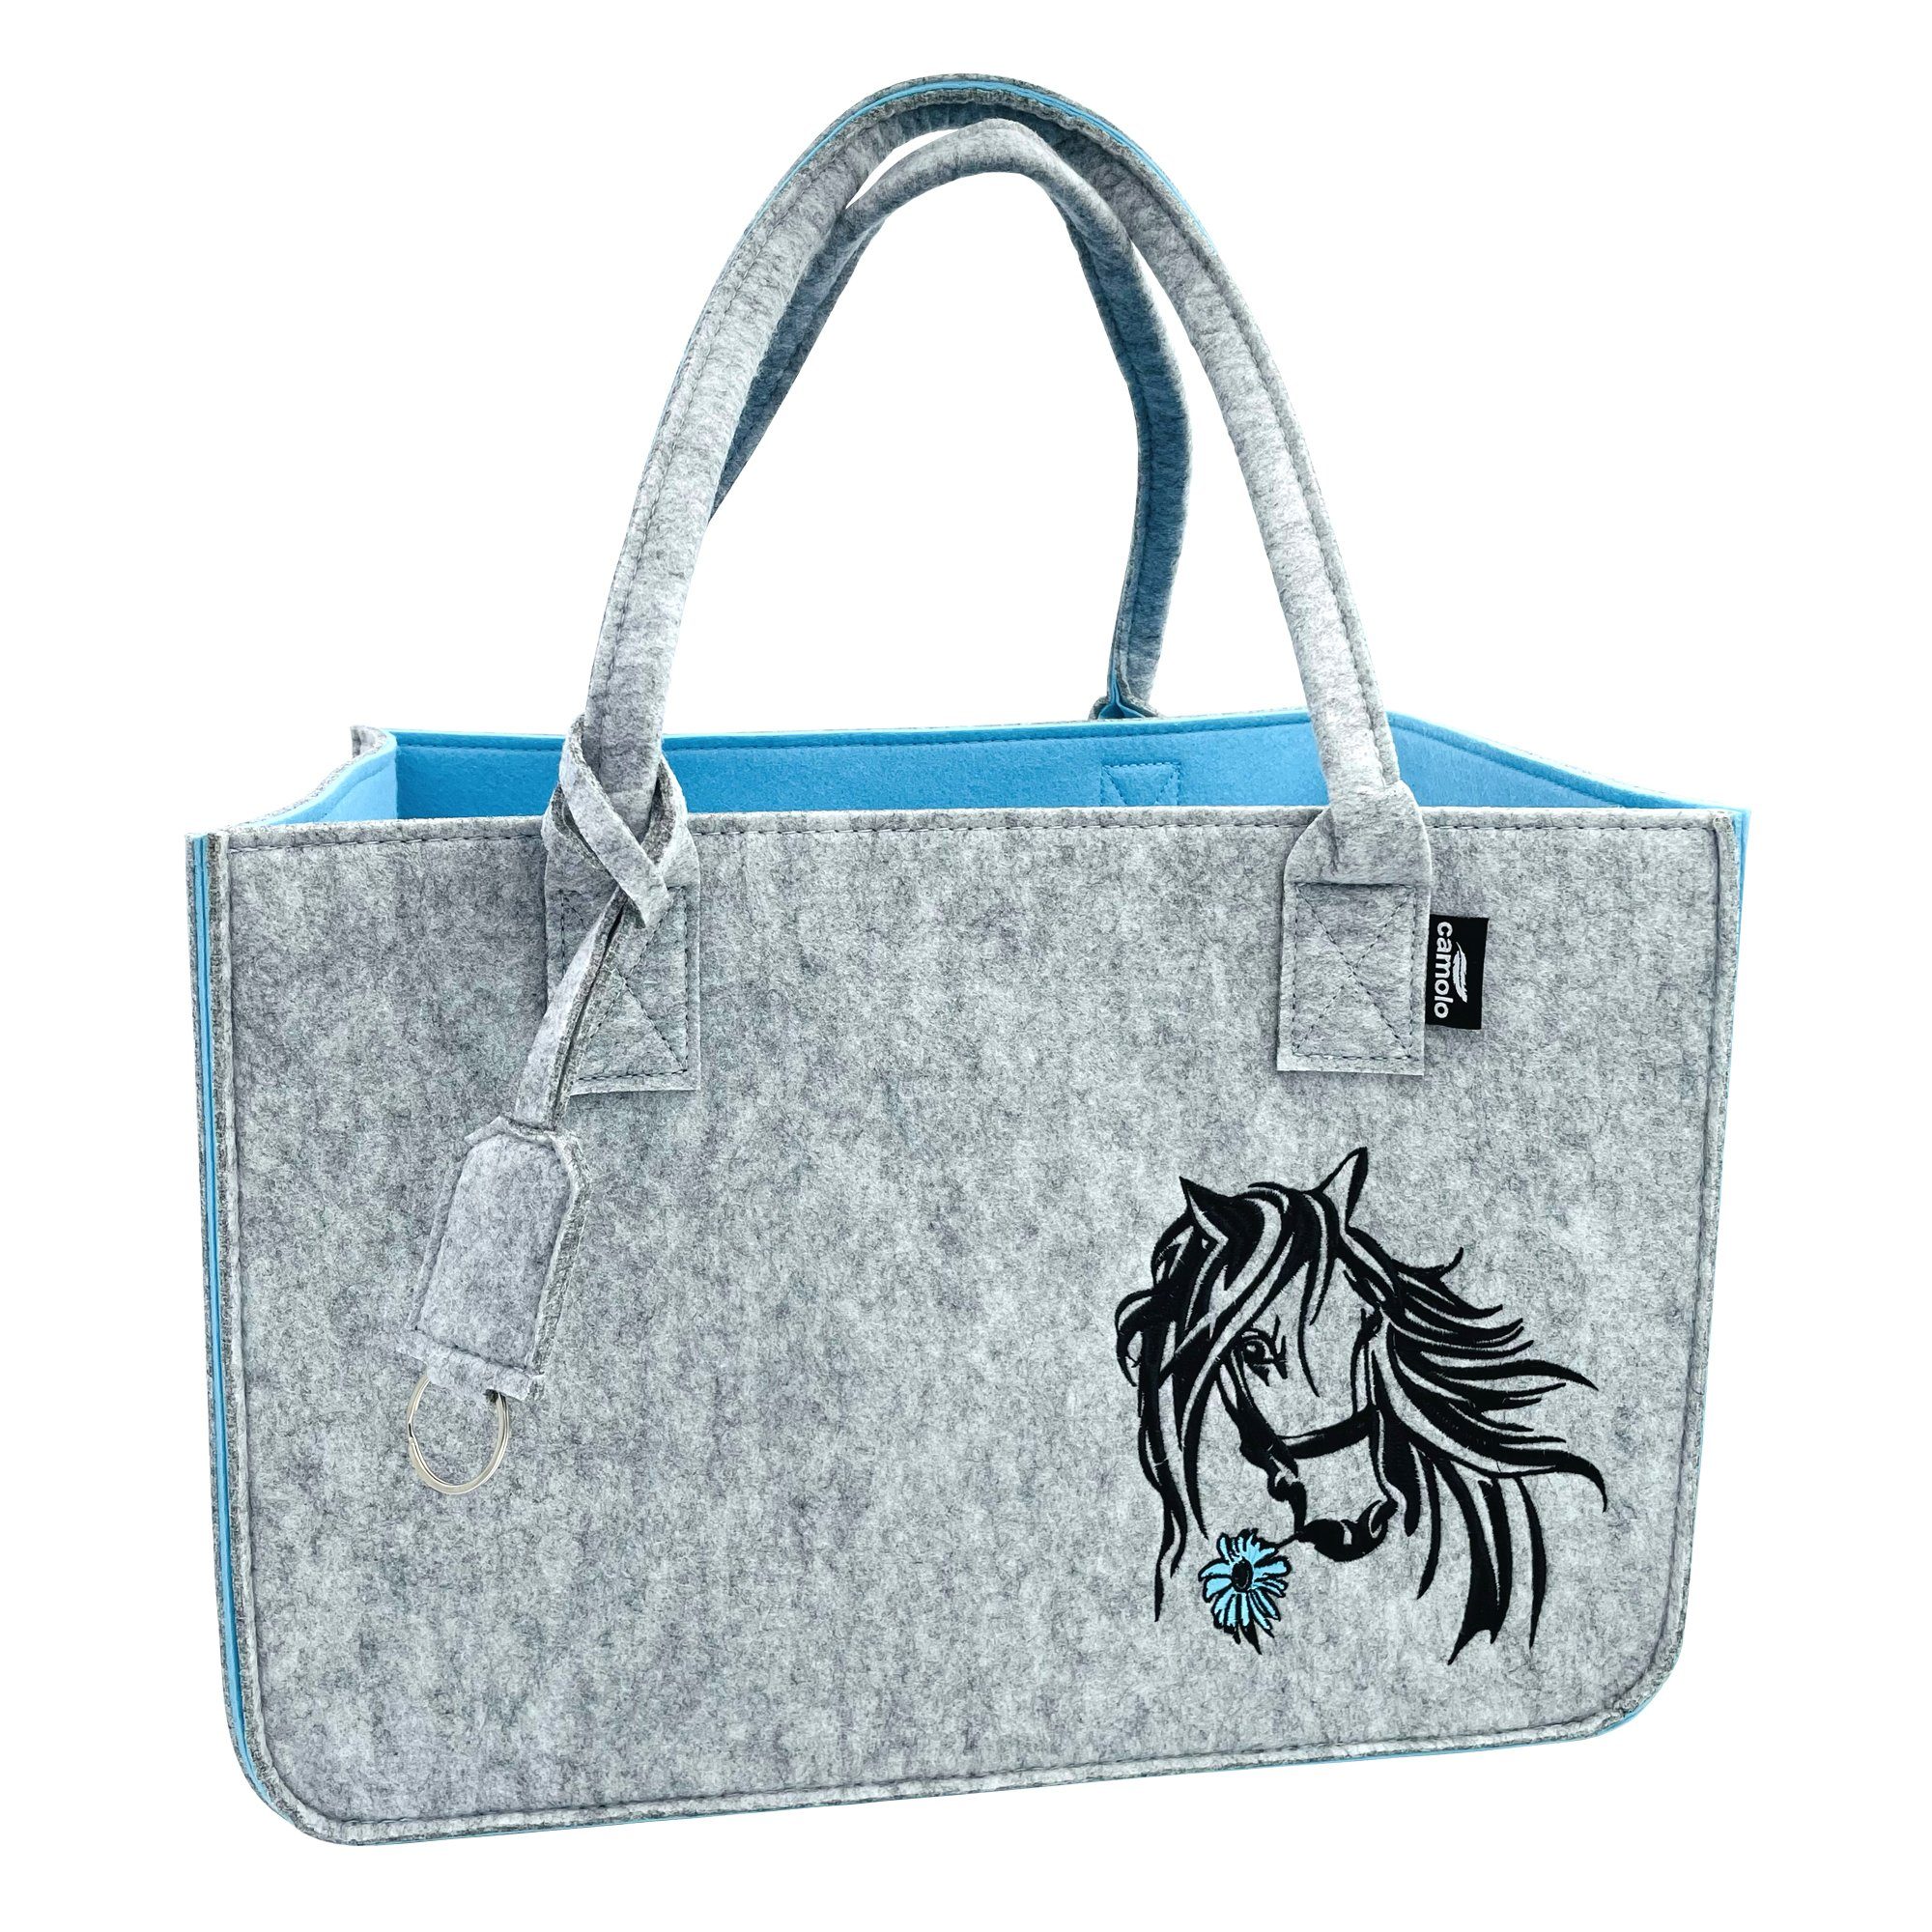 Camolo Horse mit Filz Grau/Blau Einkaufstasche Henkel Tragetasche